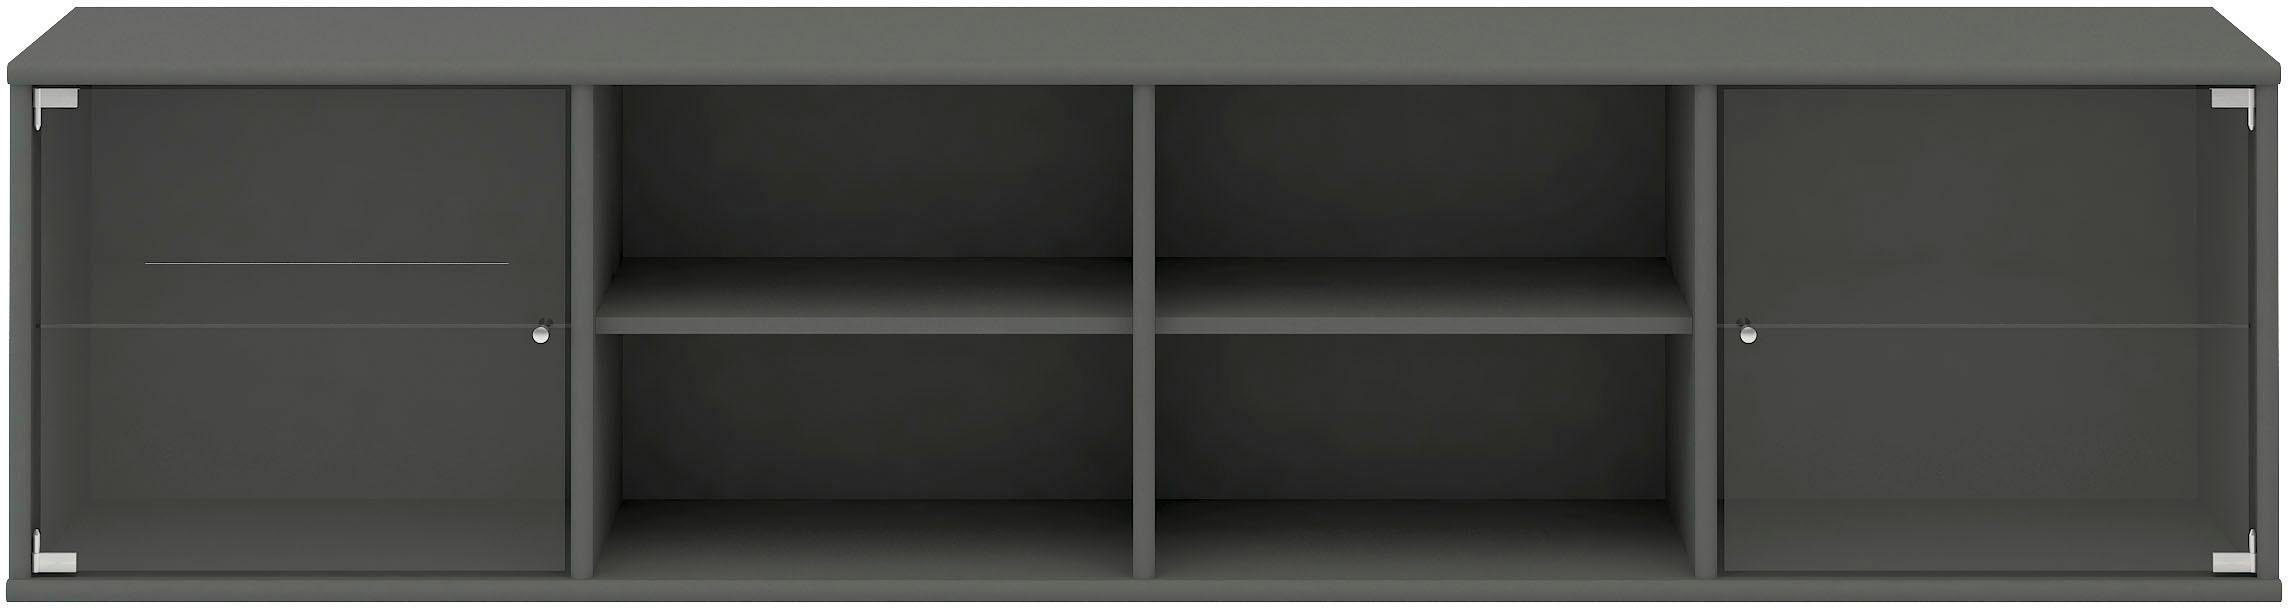 Hammel Furniture Regal Mistral, Hochwertig Lowboard, hängend/stehend montierbar, mit zwei Glastüren, B: 177 cm, lowboard, anpassungsbar Designmöbel graphit